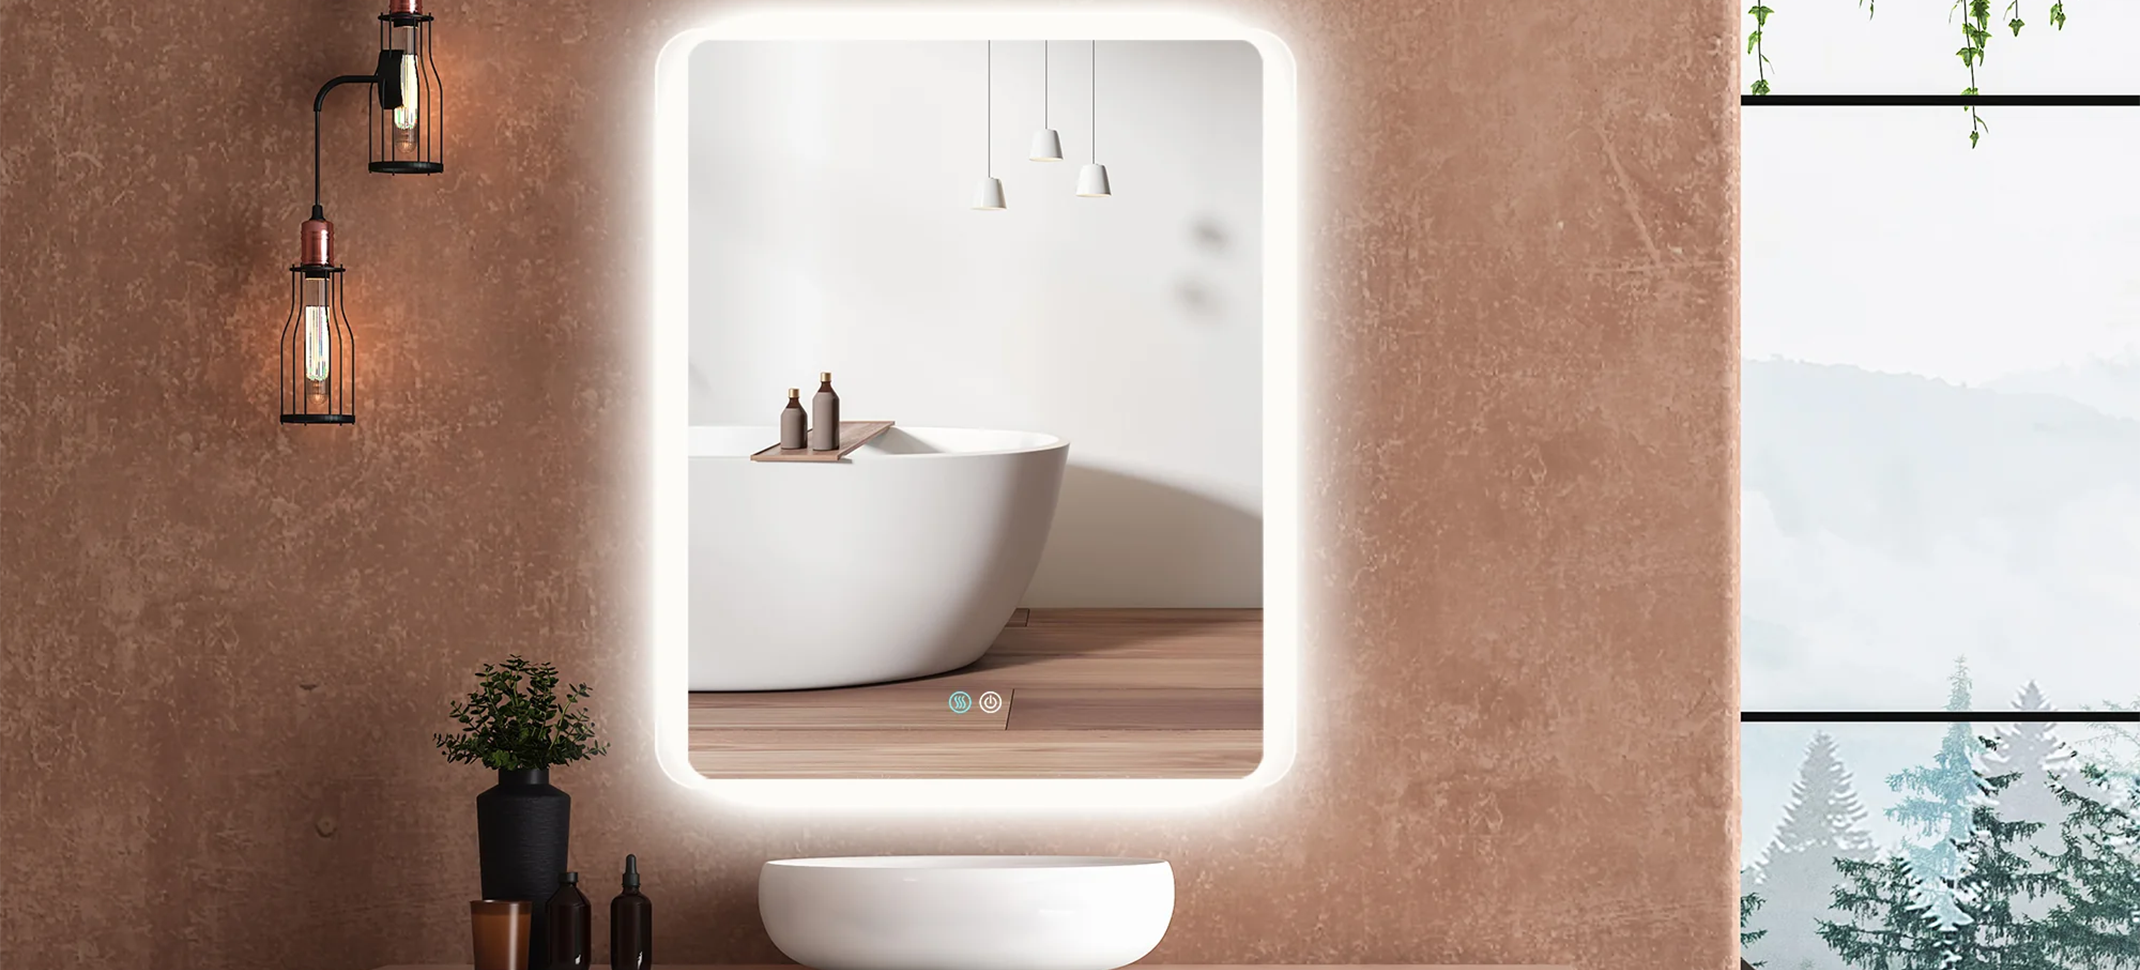 Plumbing Deals - Bathroom Mirrors